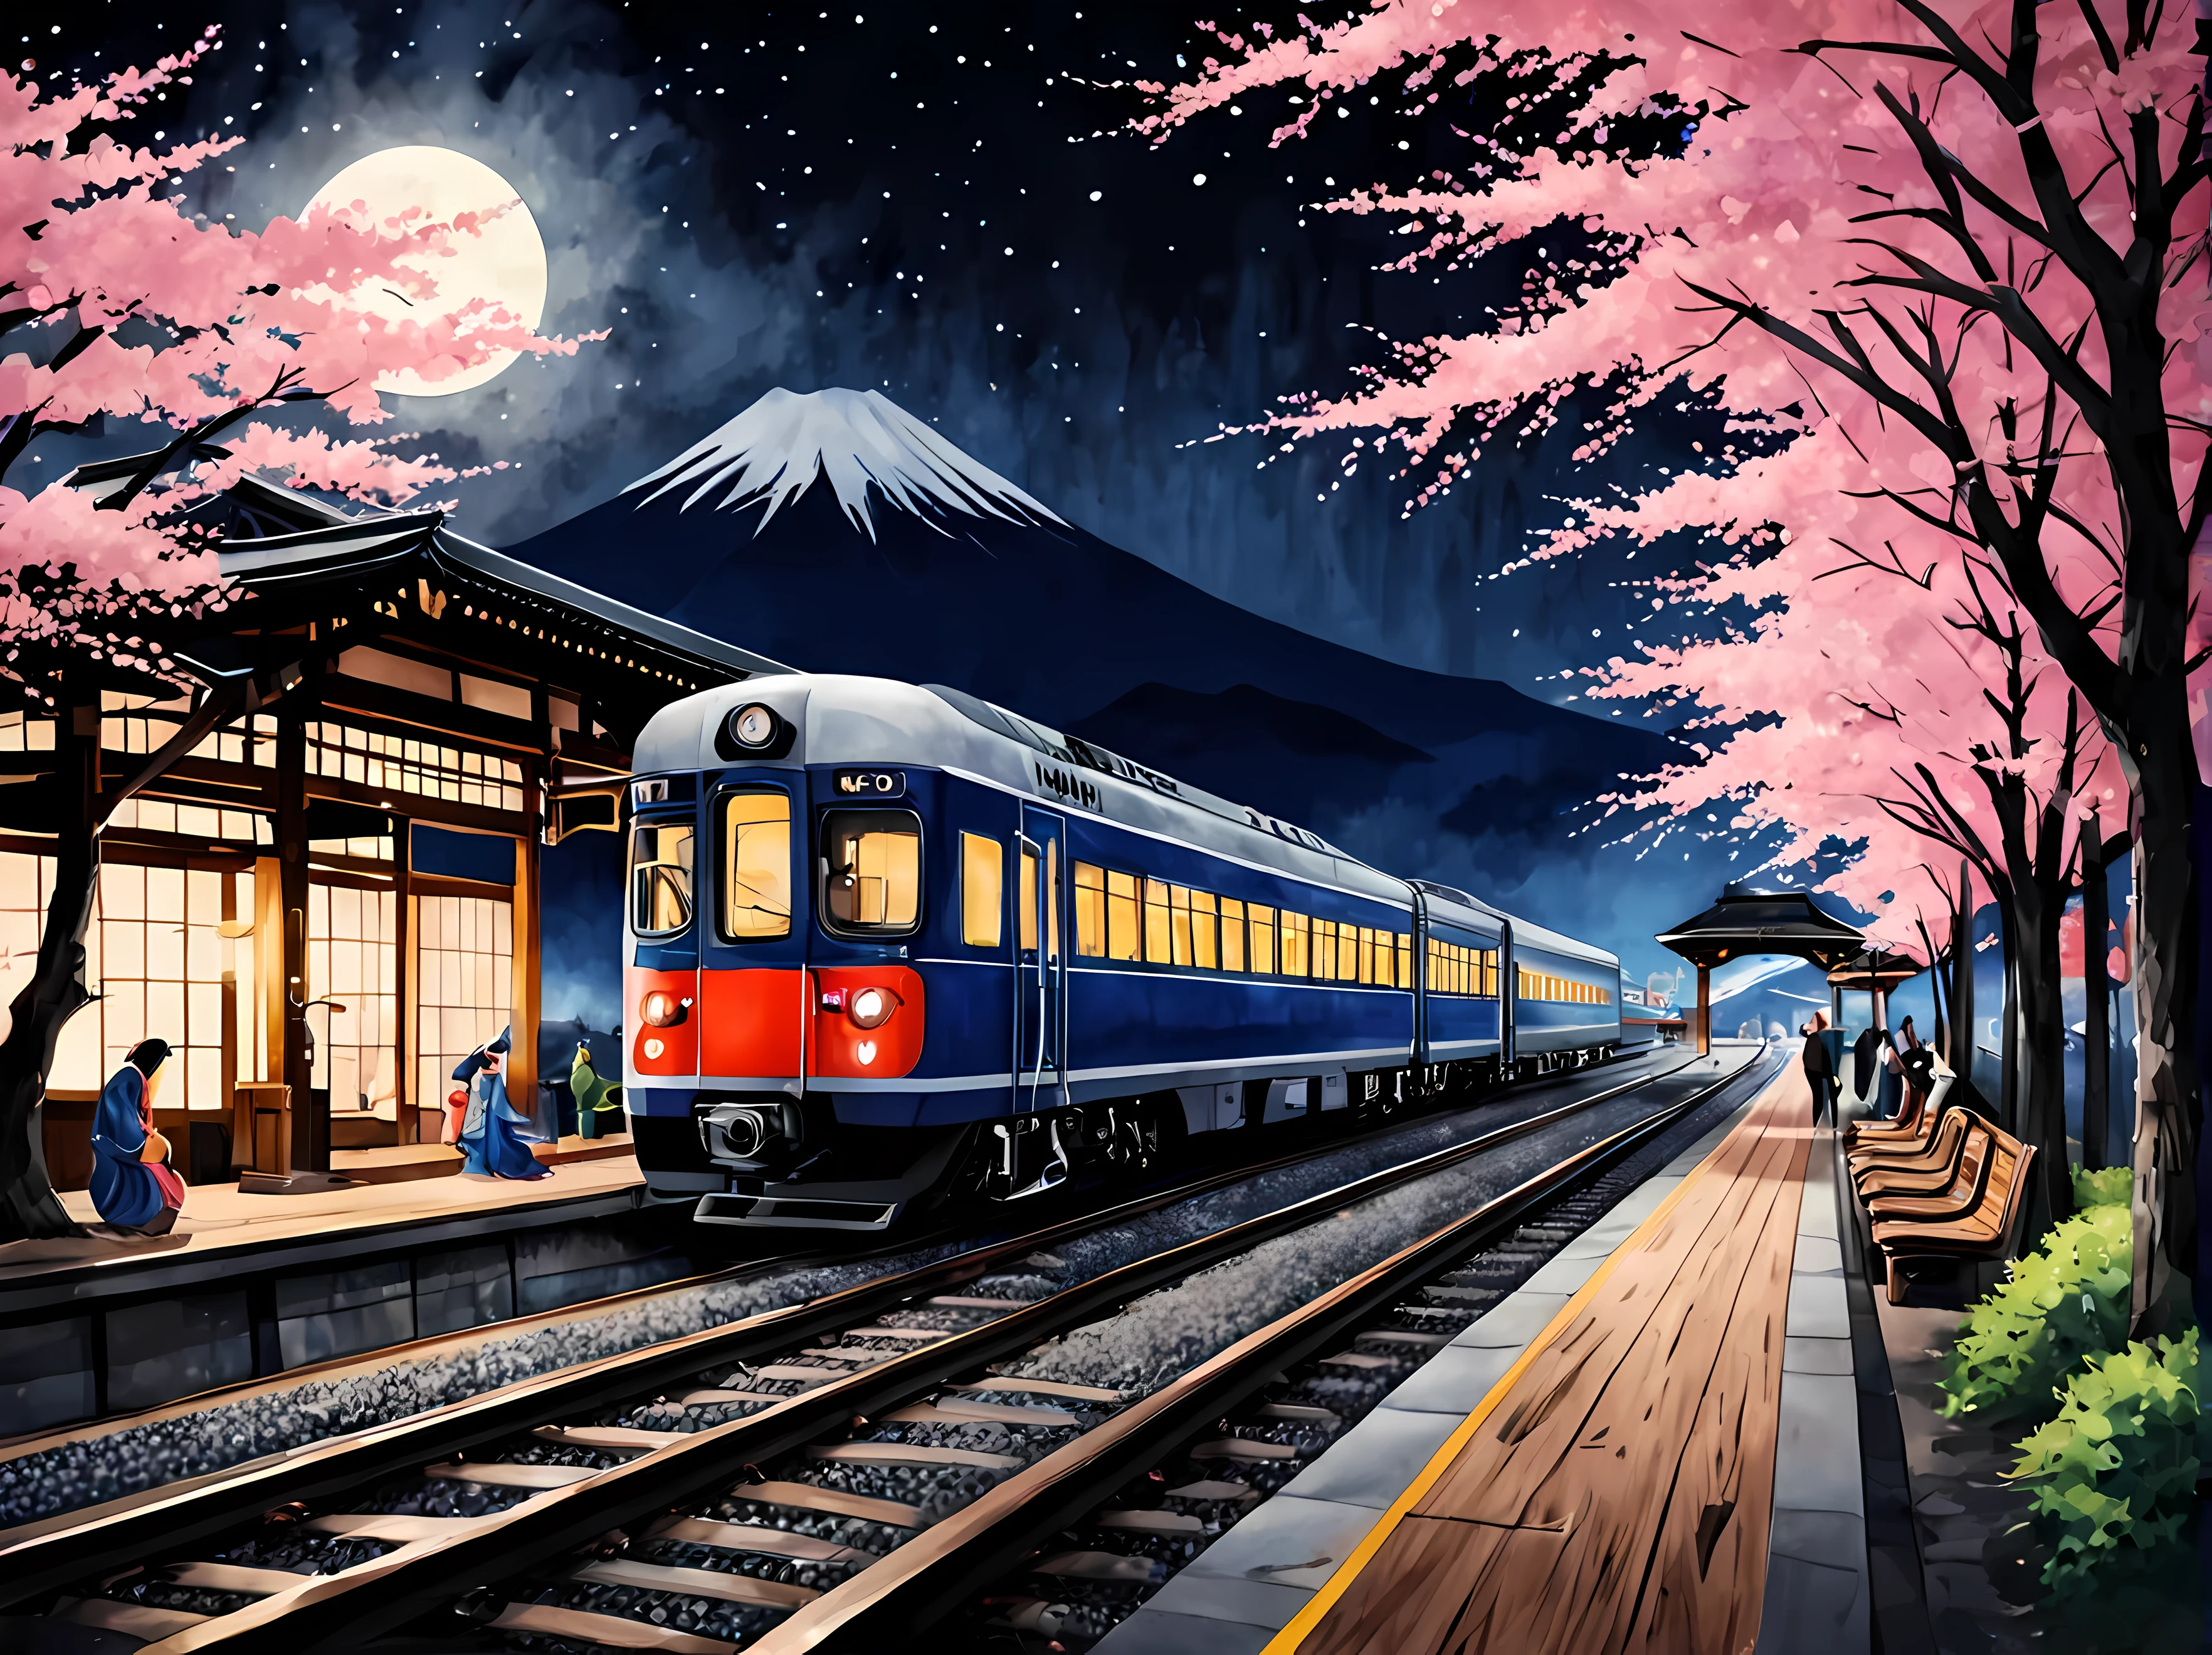 보름달이 뜨는 봄 별이 총총한 밤 일본 기차역의 매혹적인 수채화, 플랫폼에 있는 매끄러운 미래형 열차, 만개한 벚꽃나무에 둘러싸여, 랜턴과 나무 벤치와 같은 전통적인 요소, 후지산을 배경으로, 전통 의상을 입은 승객, 최대 16K 해상도의 걸작, 뛰어난 품질. | ((더_세부 사항))